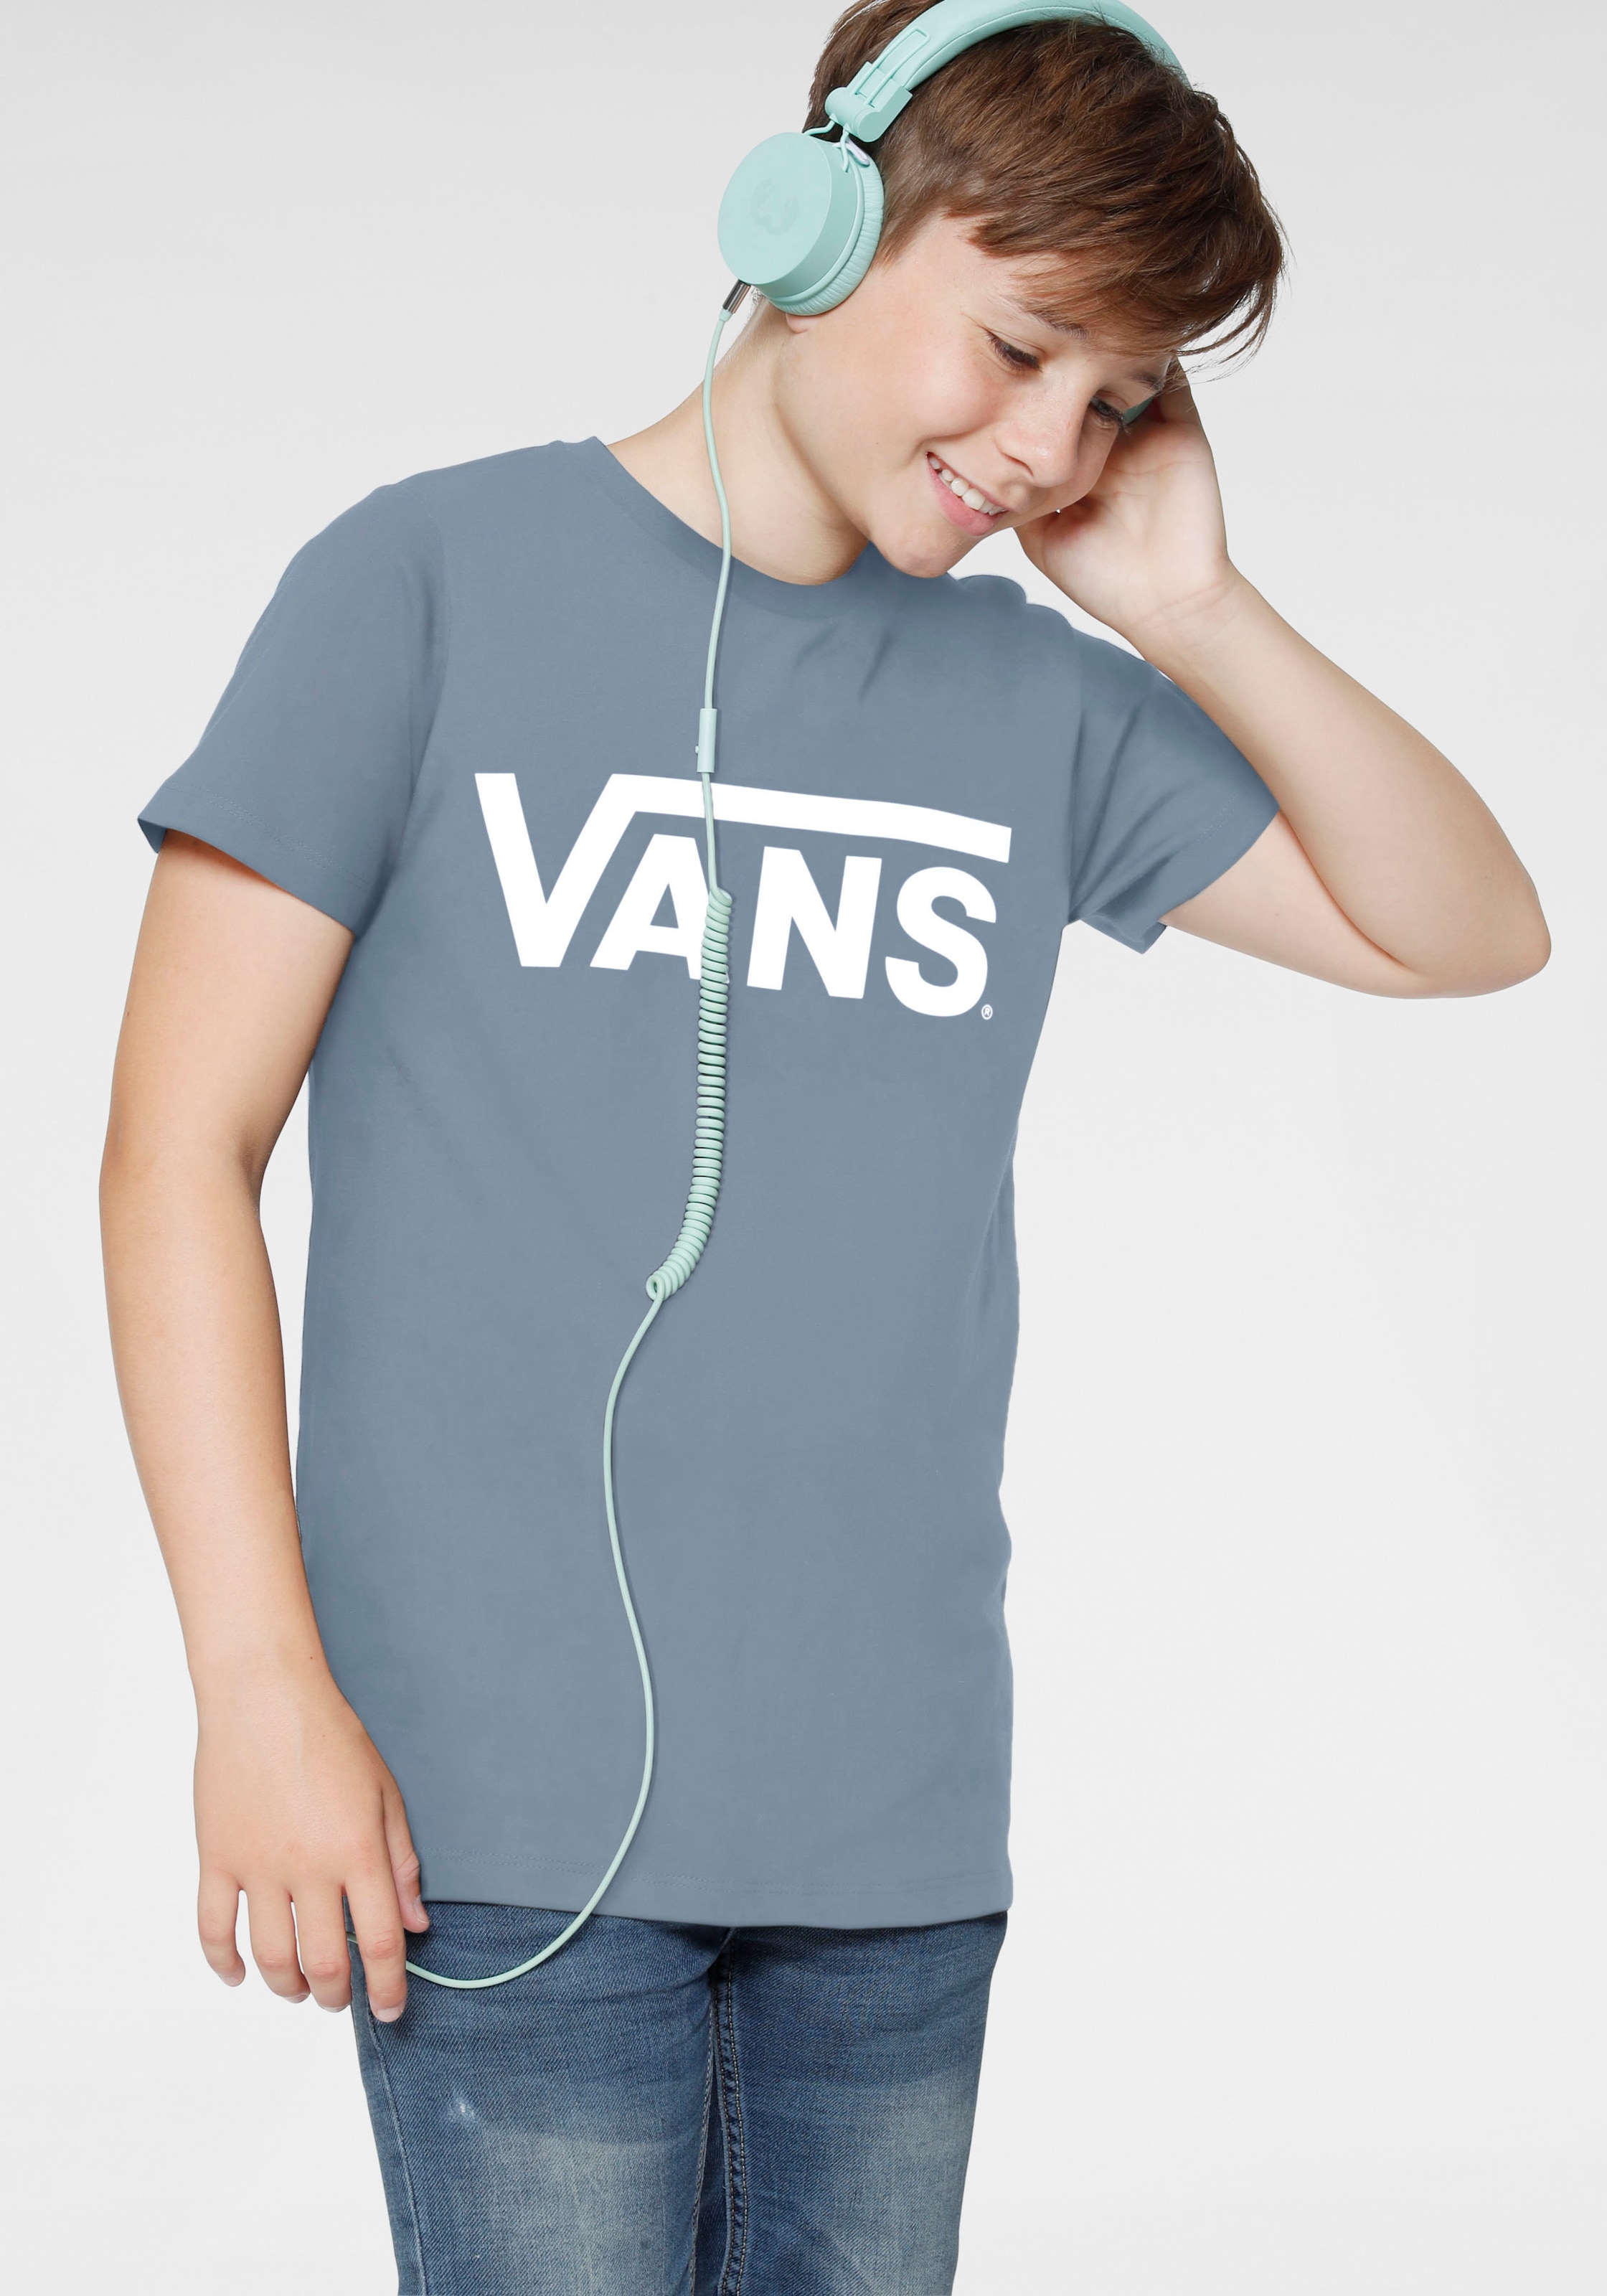 Vans T-Shirt »BYVANSCLASSICBOYS«